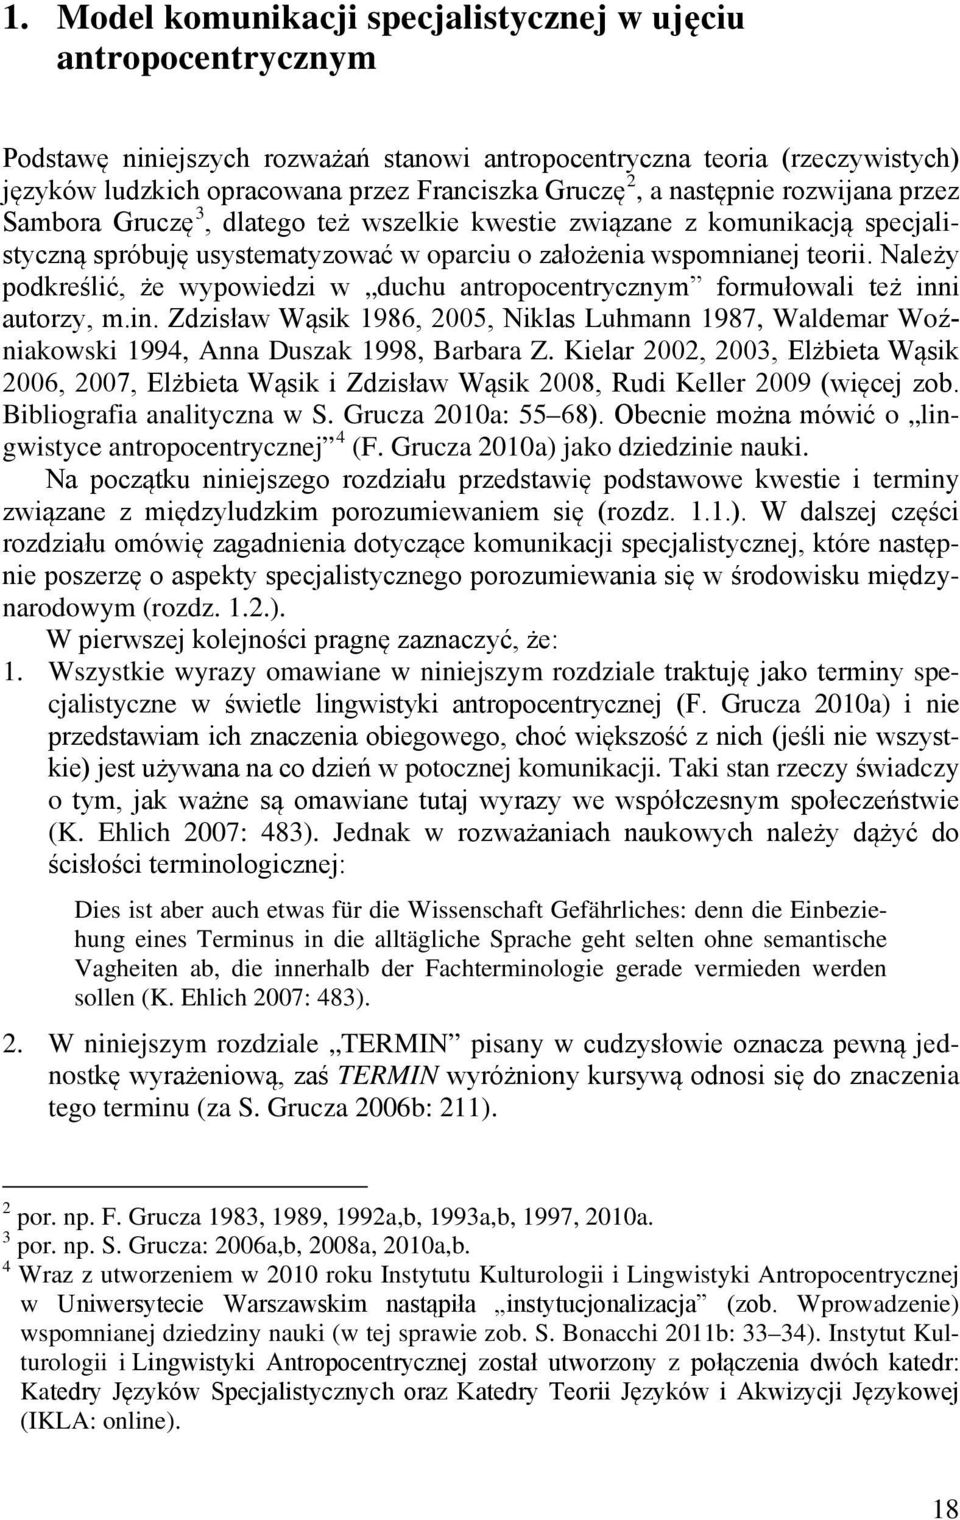 Należy podkreślić, że wypowiedzi w duchu antropocentrycznym formułowali też inni autorzy, m.in. Zdzisław Wąsik 1986, 2005, Niklas Luhmann 1987, Waldemar Woźniakowski 1994, Anna Duszak 1998, Barbara Z.